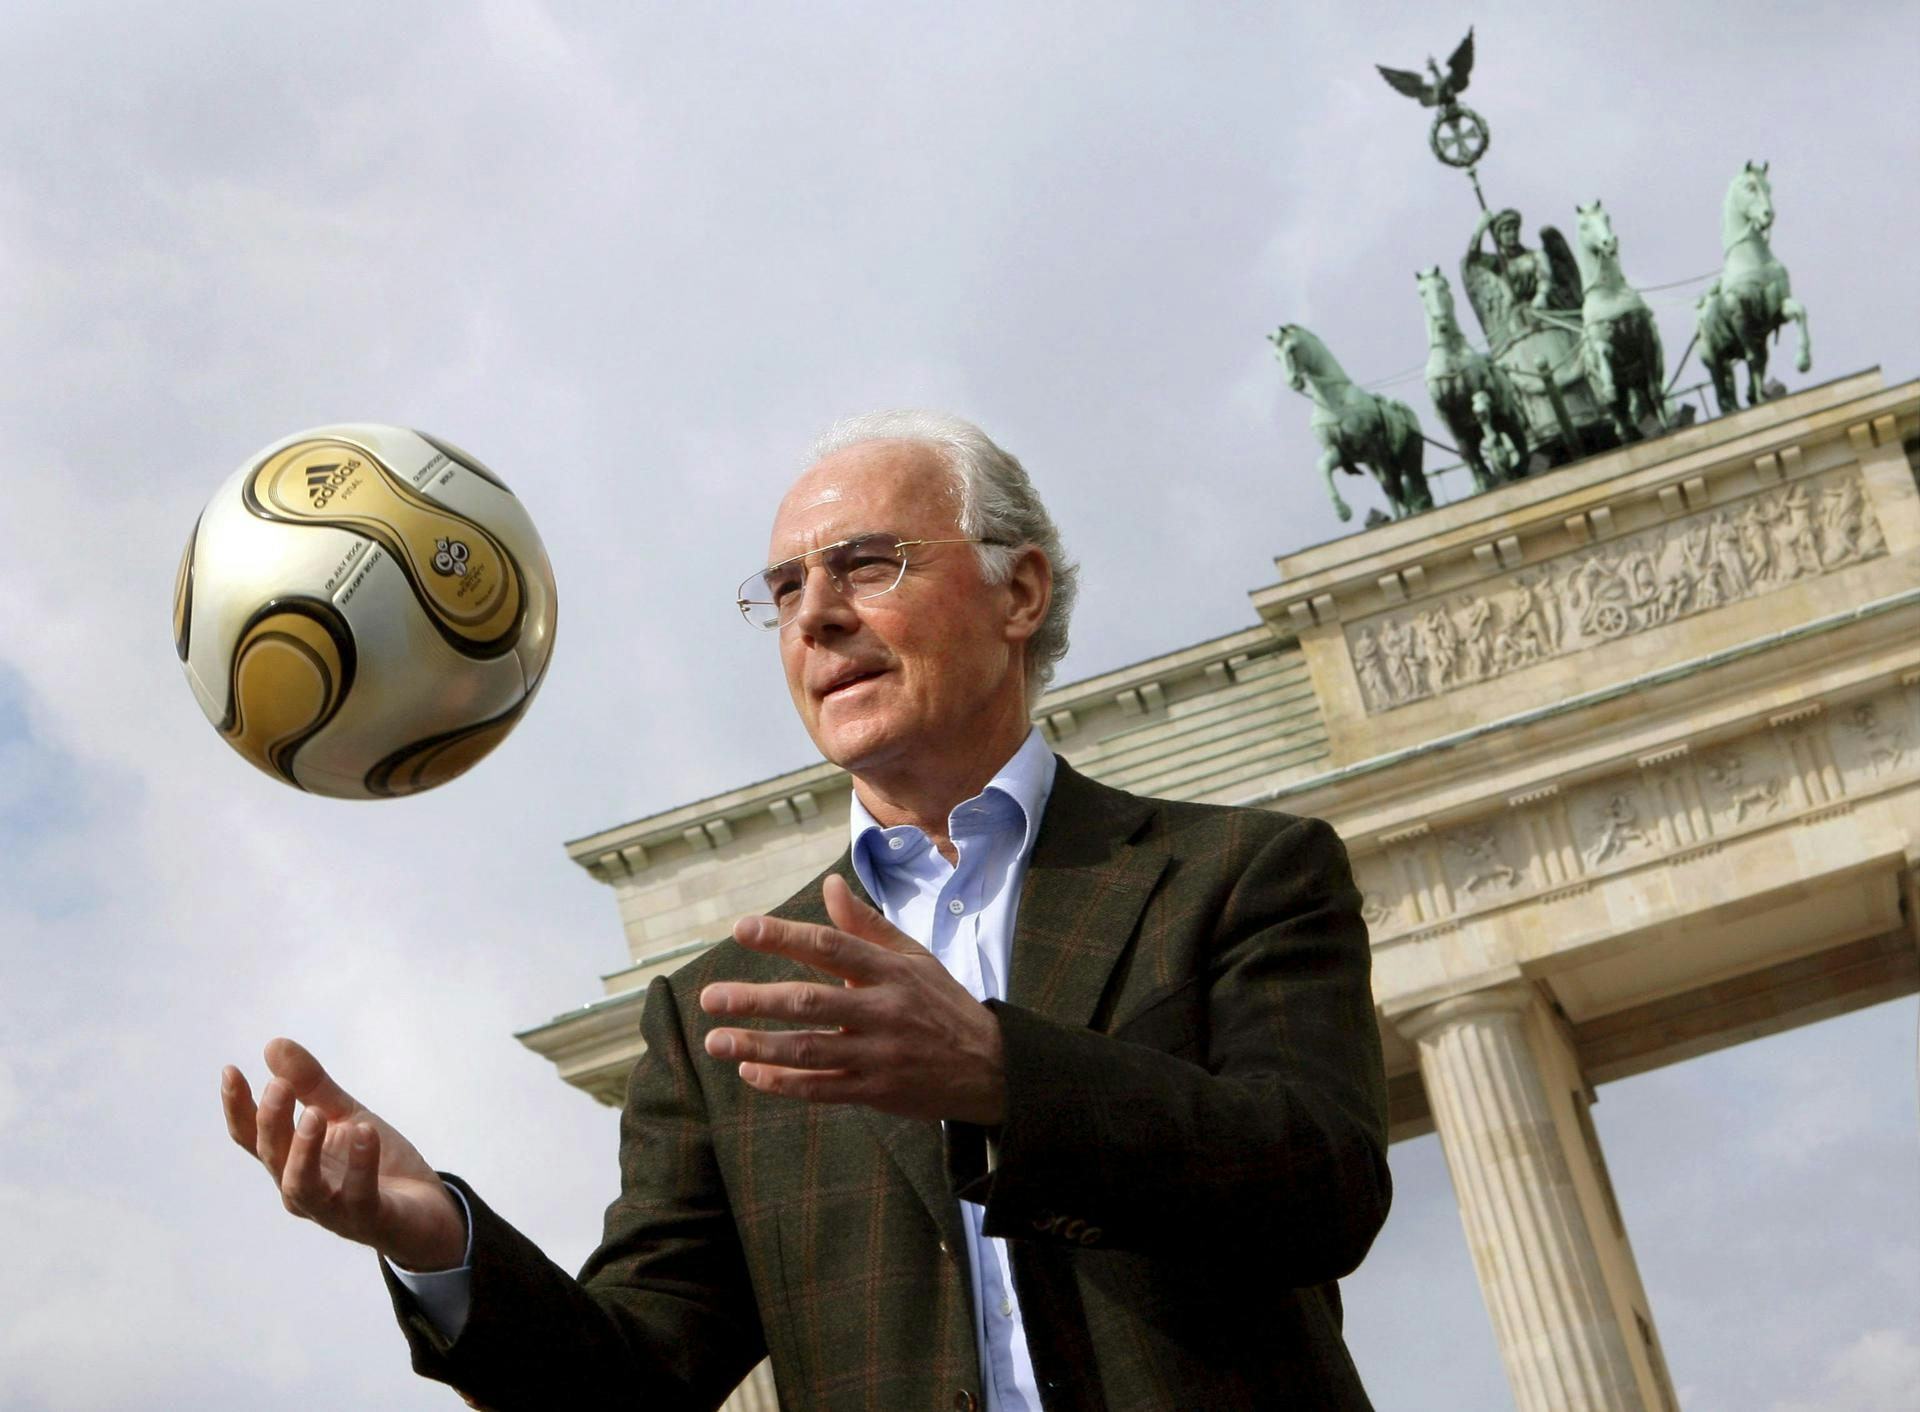 German football legend Franz Beckenbauer dies aged 78